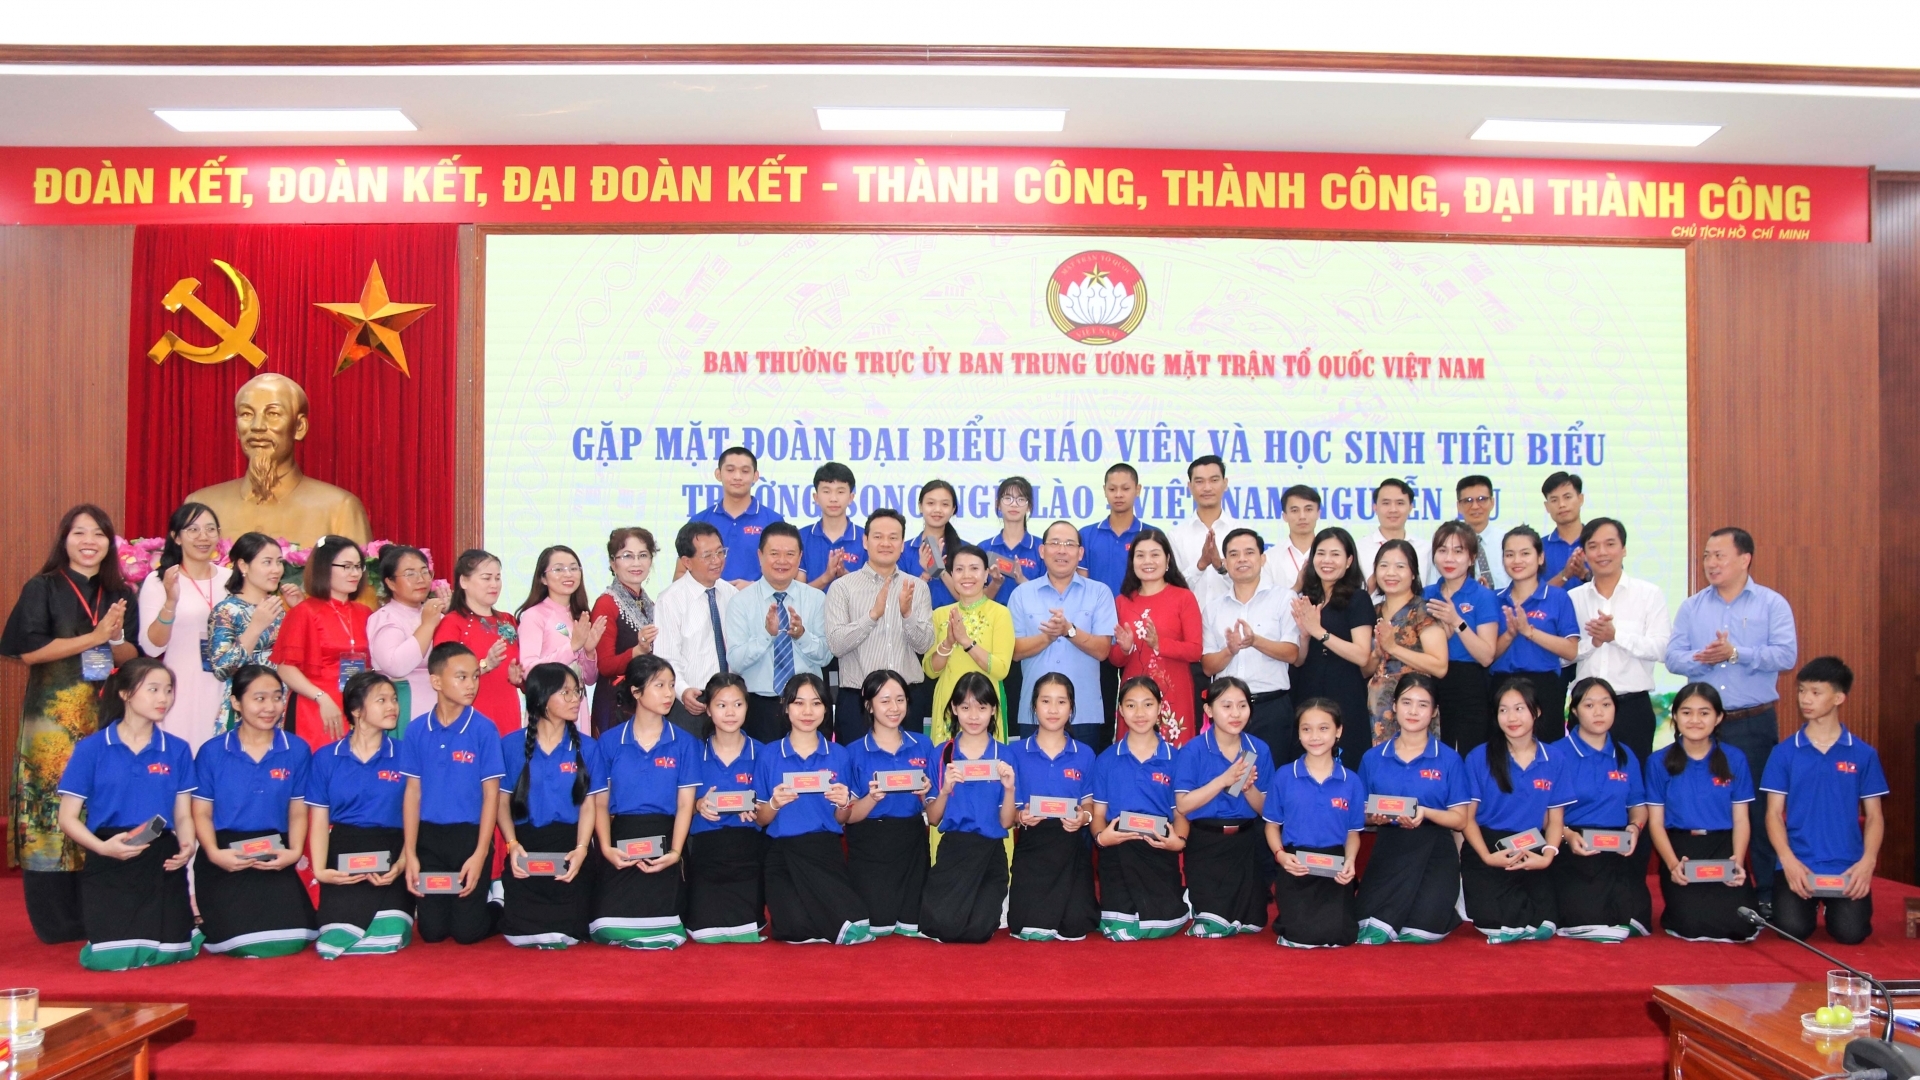 向老挝人民传播越南文化和爱心